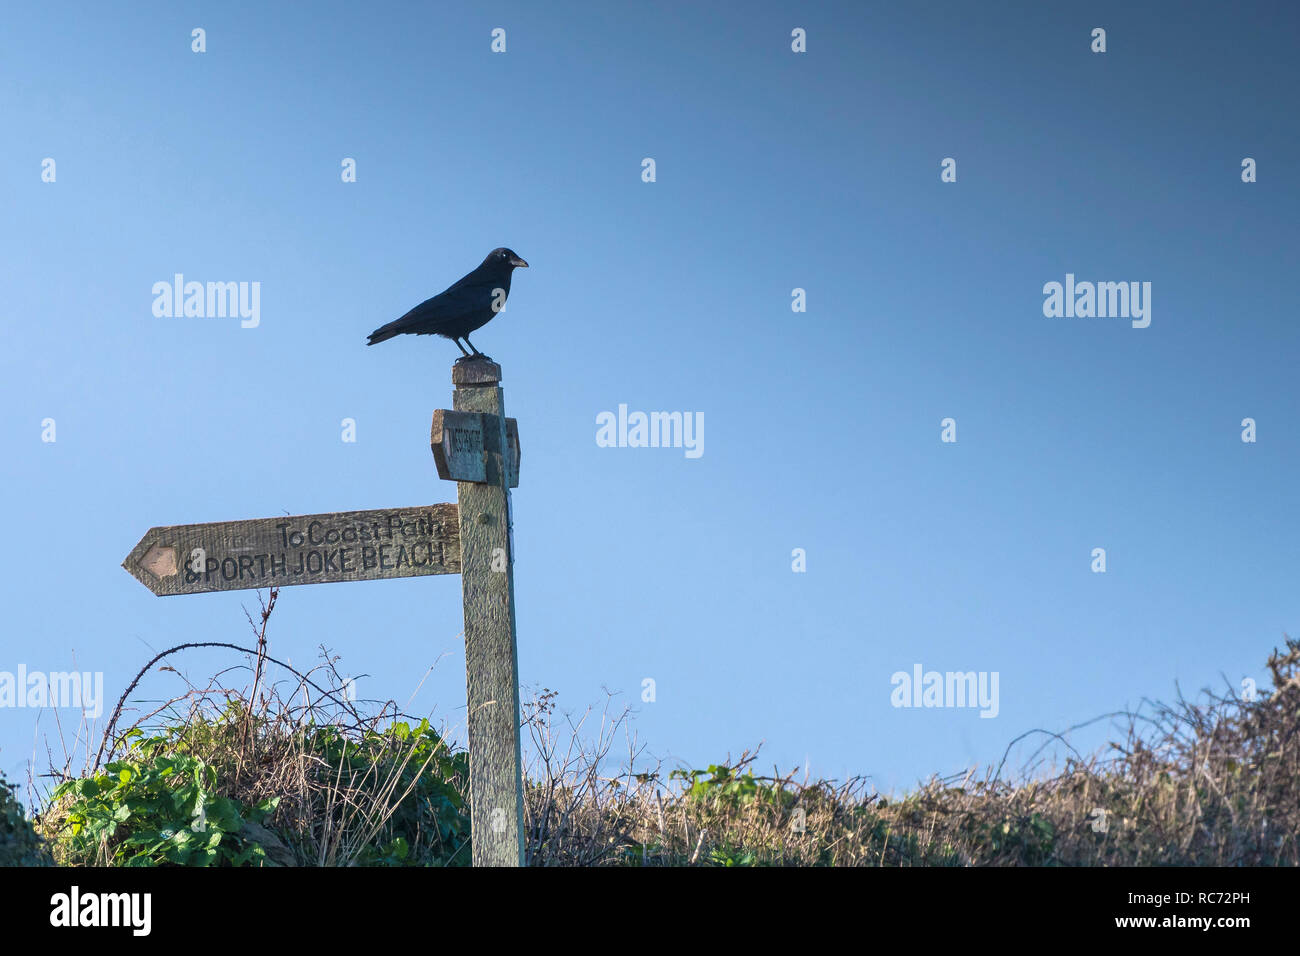 Eine Rabenkrähe Corvus corone thront auf einem hölzernen Wegweiser in der Nähe des South West Coast Path auf Pentire Punkt westlich in Cornwall. Stockfoto